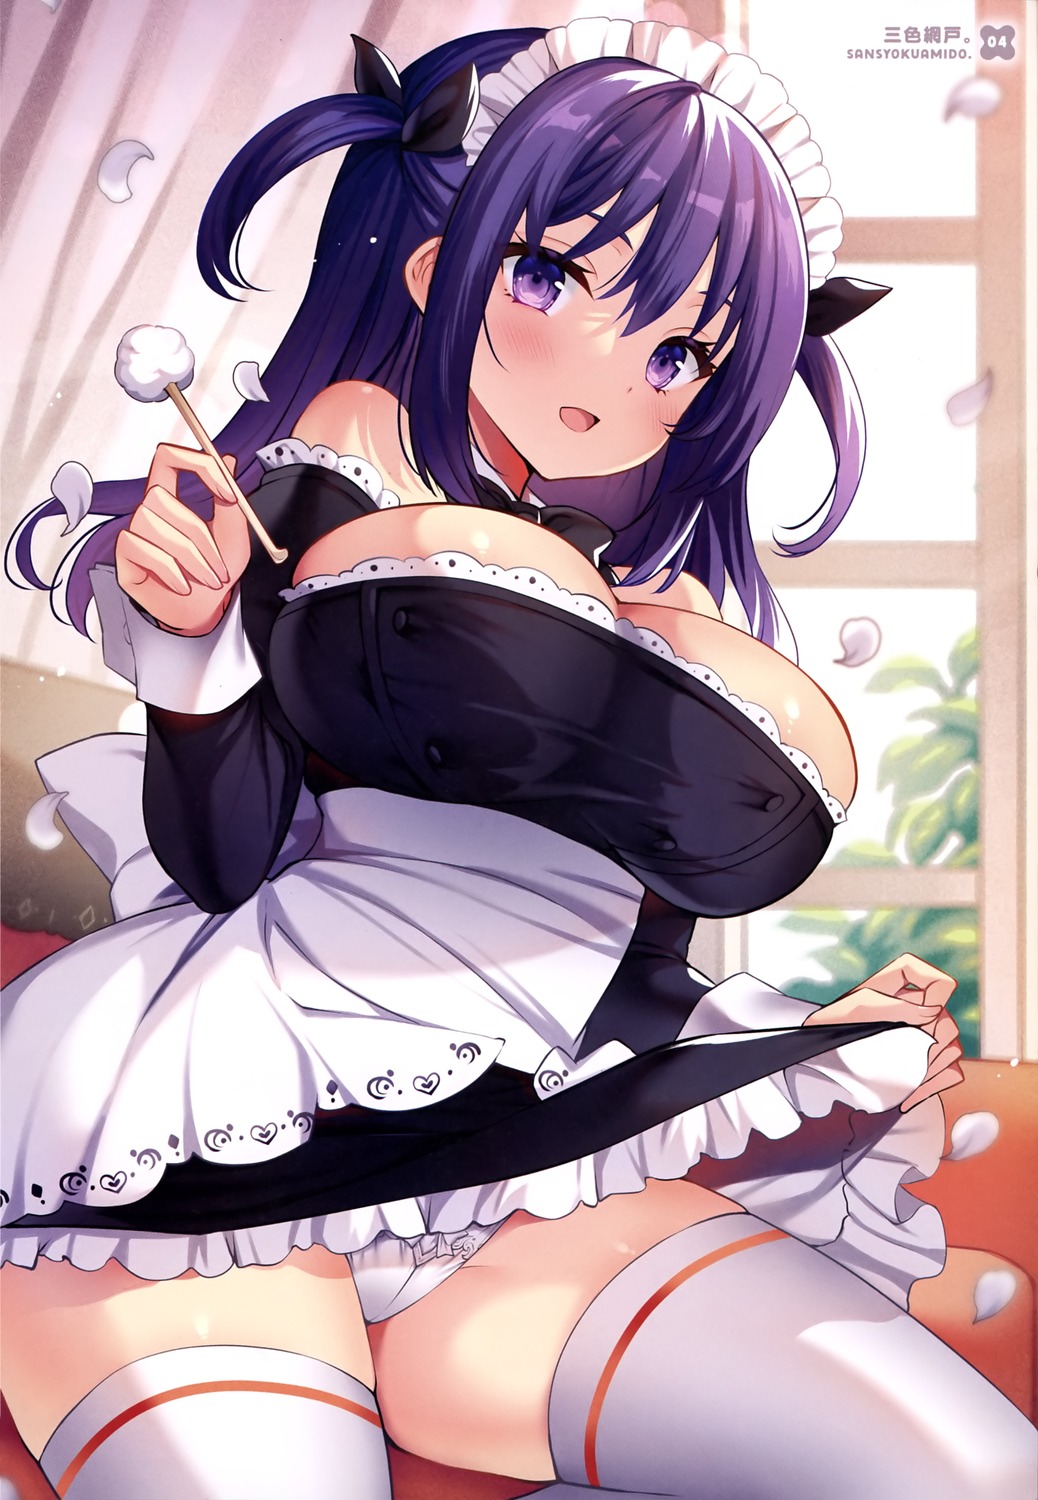 maid pantsu sansyoku_amido. skirt_lift thighhighs